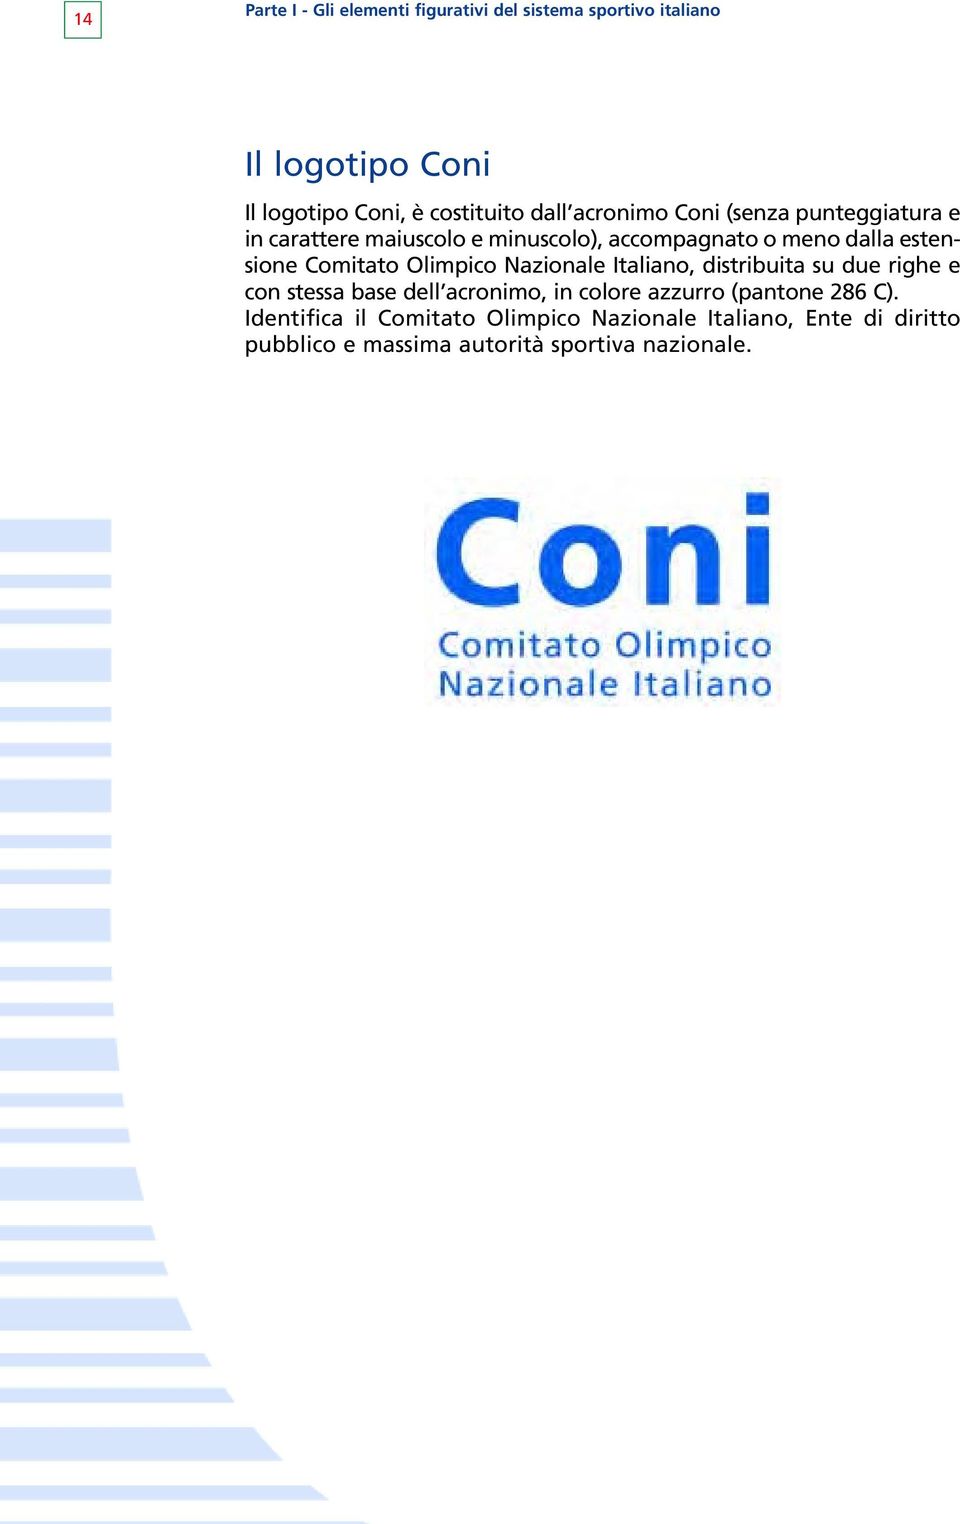 Olimpico Nazionale Italiano, distribuita su due righe e con stessa base dell acronimo, in colore azzurro (pantone 286